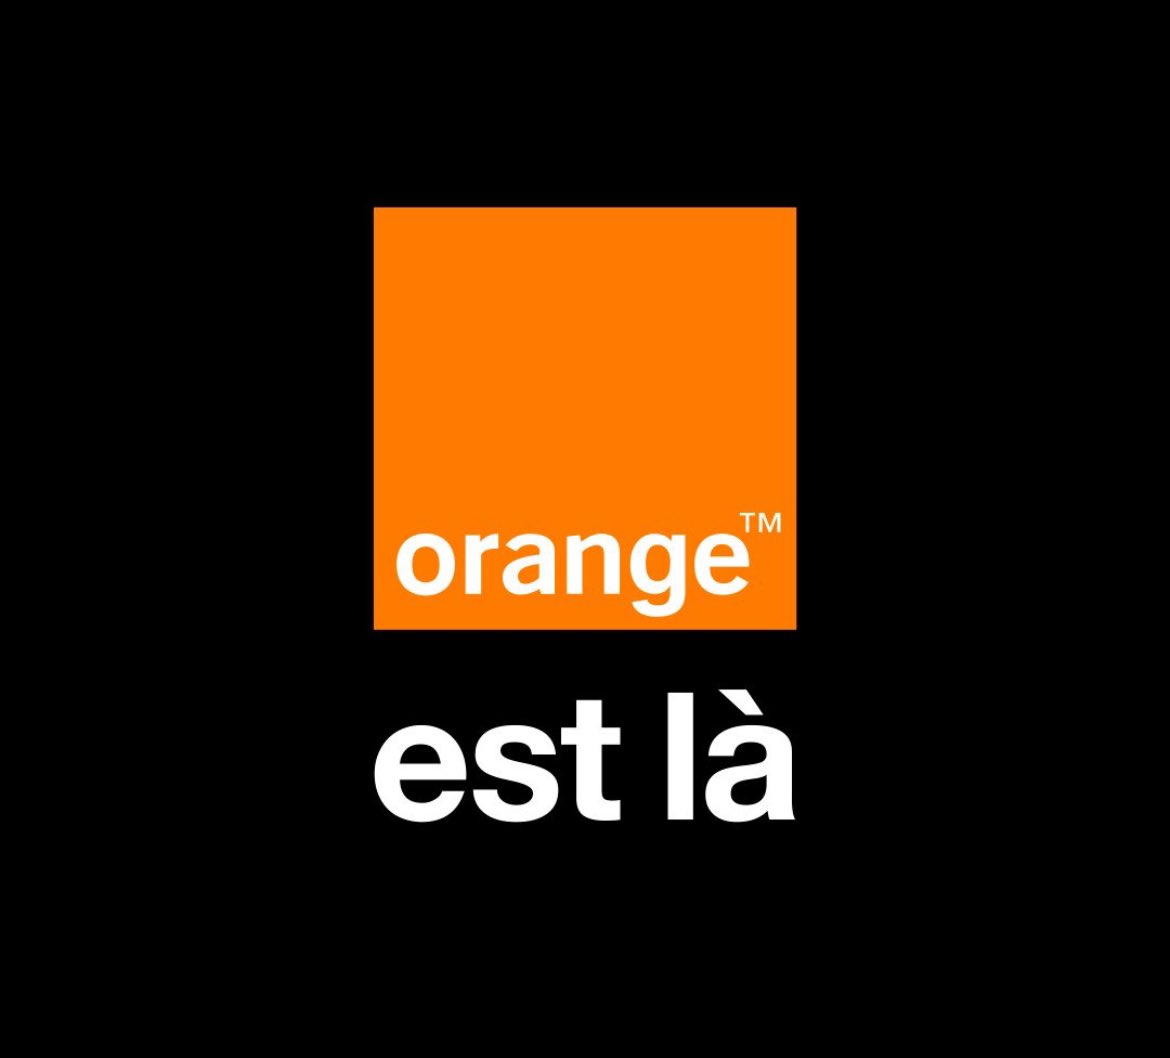 « Orange est là » devient la nouvelle signature de la #marque @orange 🧡 𝐿𝑒 𝐺𝑟𝑜𝑢𝑝𝑒 𝑂𝑟𝑎𝑛𝑔𝑒 𝑙𝑎𝑛𝑐𝑒 𝑢𝑛𝑒 𝑛𝑜𝑢𝑣𝑒𝑙𝑙𝑒 𝑠𝑖𝑔𝑛𝑎𝑡𝑢𝑟𝑒 𝑑𝑒 𝑚𝑎𝑟𝑞𝑢𝑒 𝑒𝑡 𝑎𝑗𝑢𝑠𝑡𝑒 𝑠𝑜𝑛 𝑡𝑒𝑟𝑟𝑖𝑡𝑜𝑖𝑟𝑒 𝑑𝑒 #𝑐𝑜𝑚𝑚𝑢𝑛𝑖𝑐𝑎𝑡𝑖𝑜𝑛 𝑝𝑜𝑢𝑟 𝑚𝑖𝑒𝑢𝑥